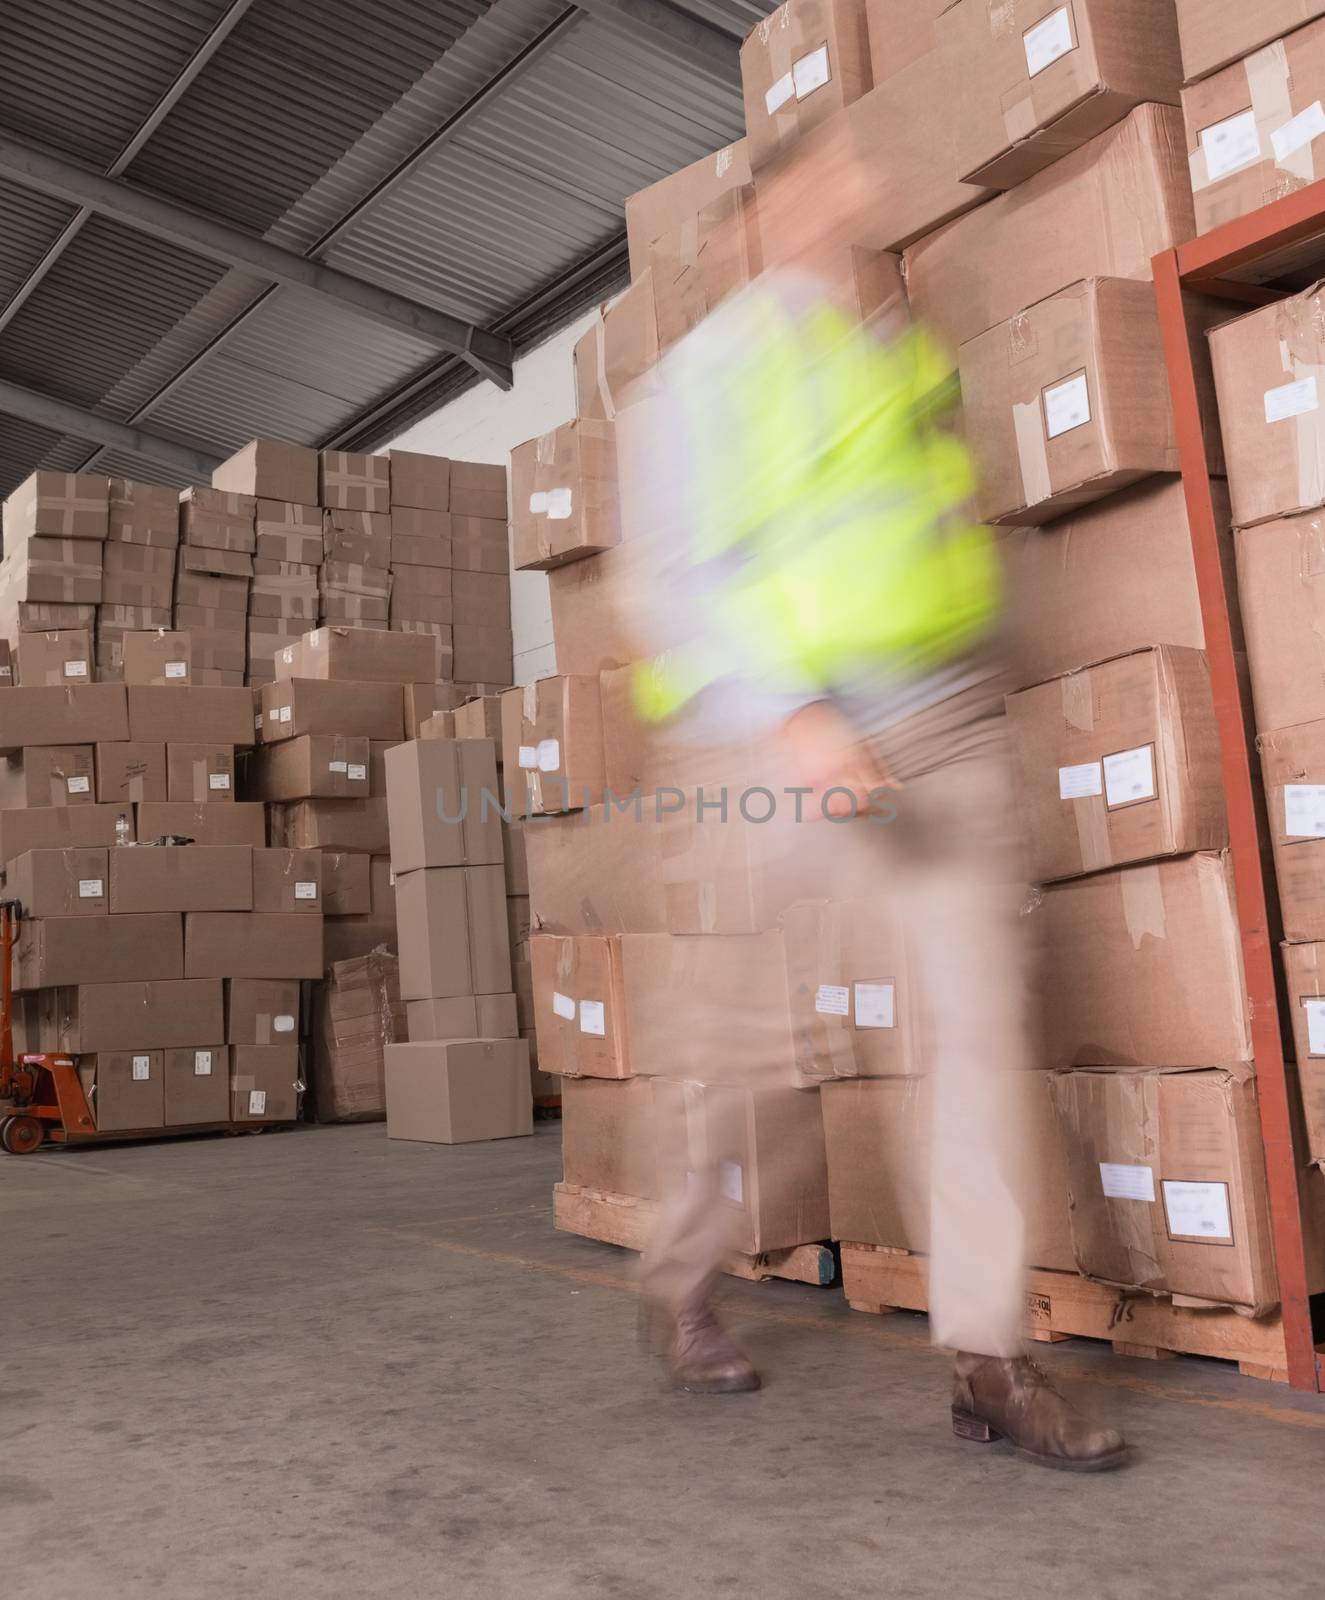 Blurred worker walking in warehouse by Wavebreakmedia